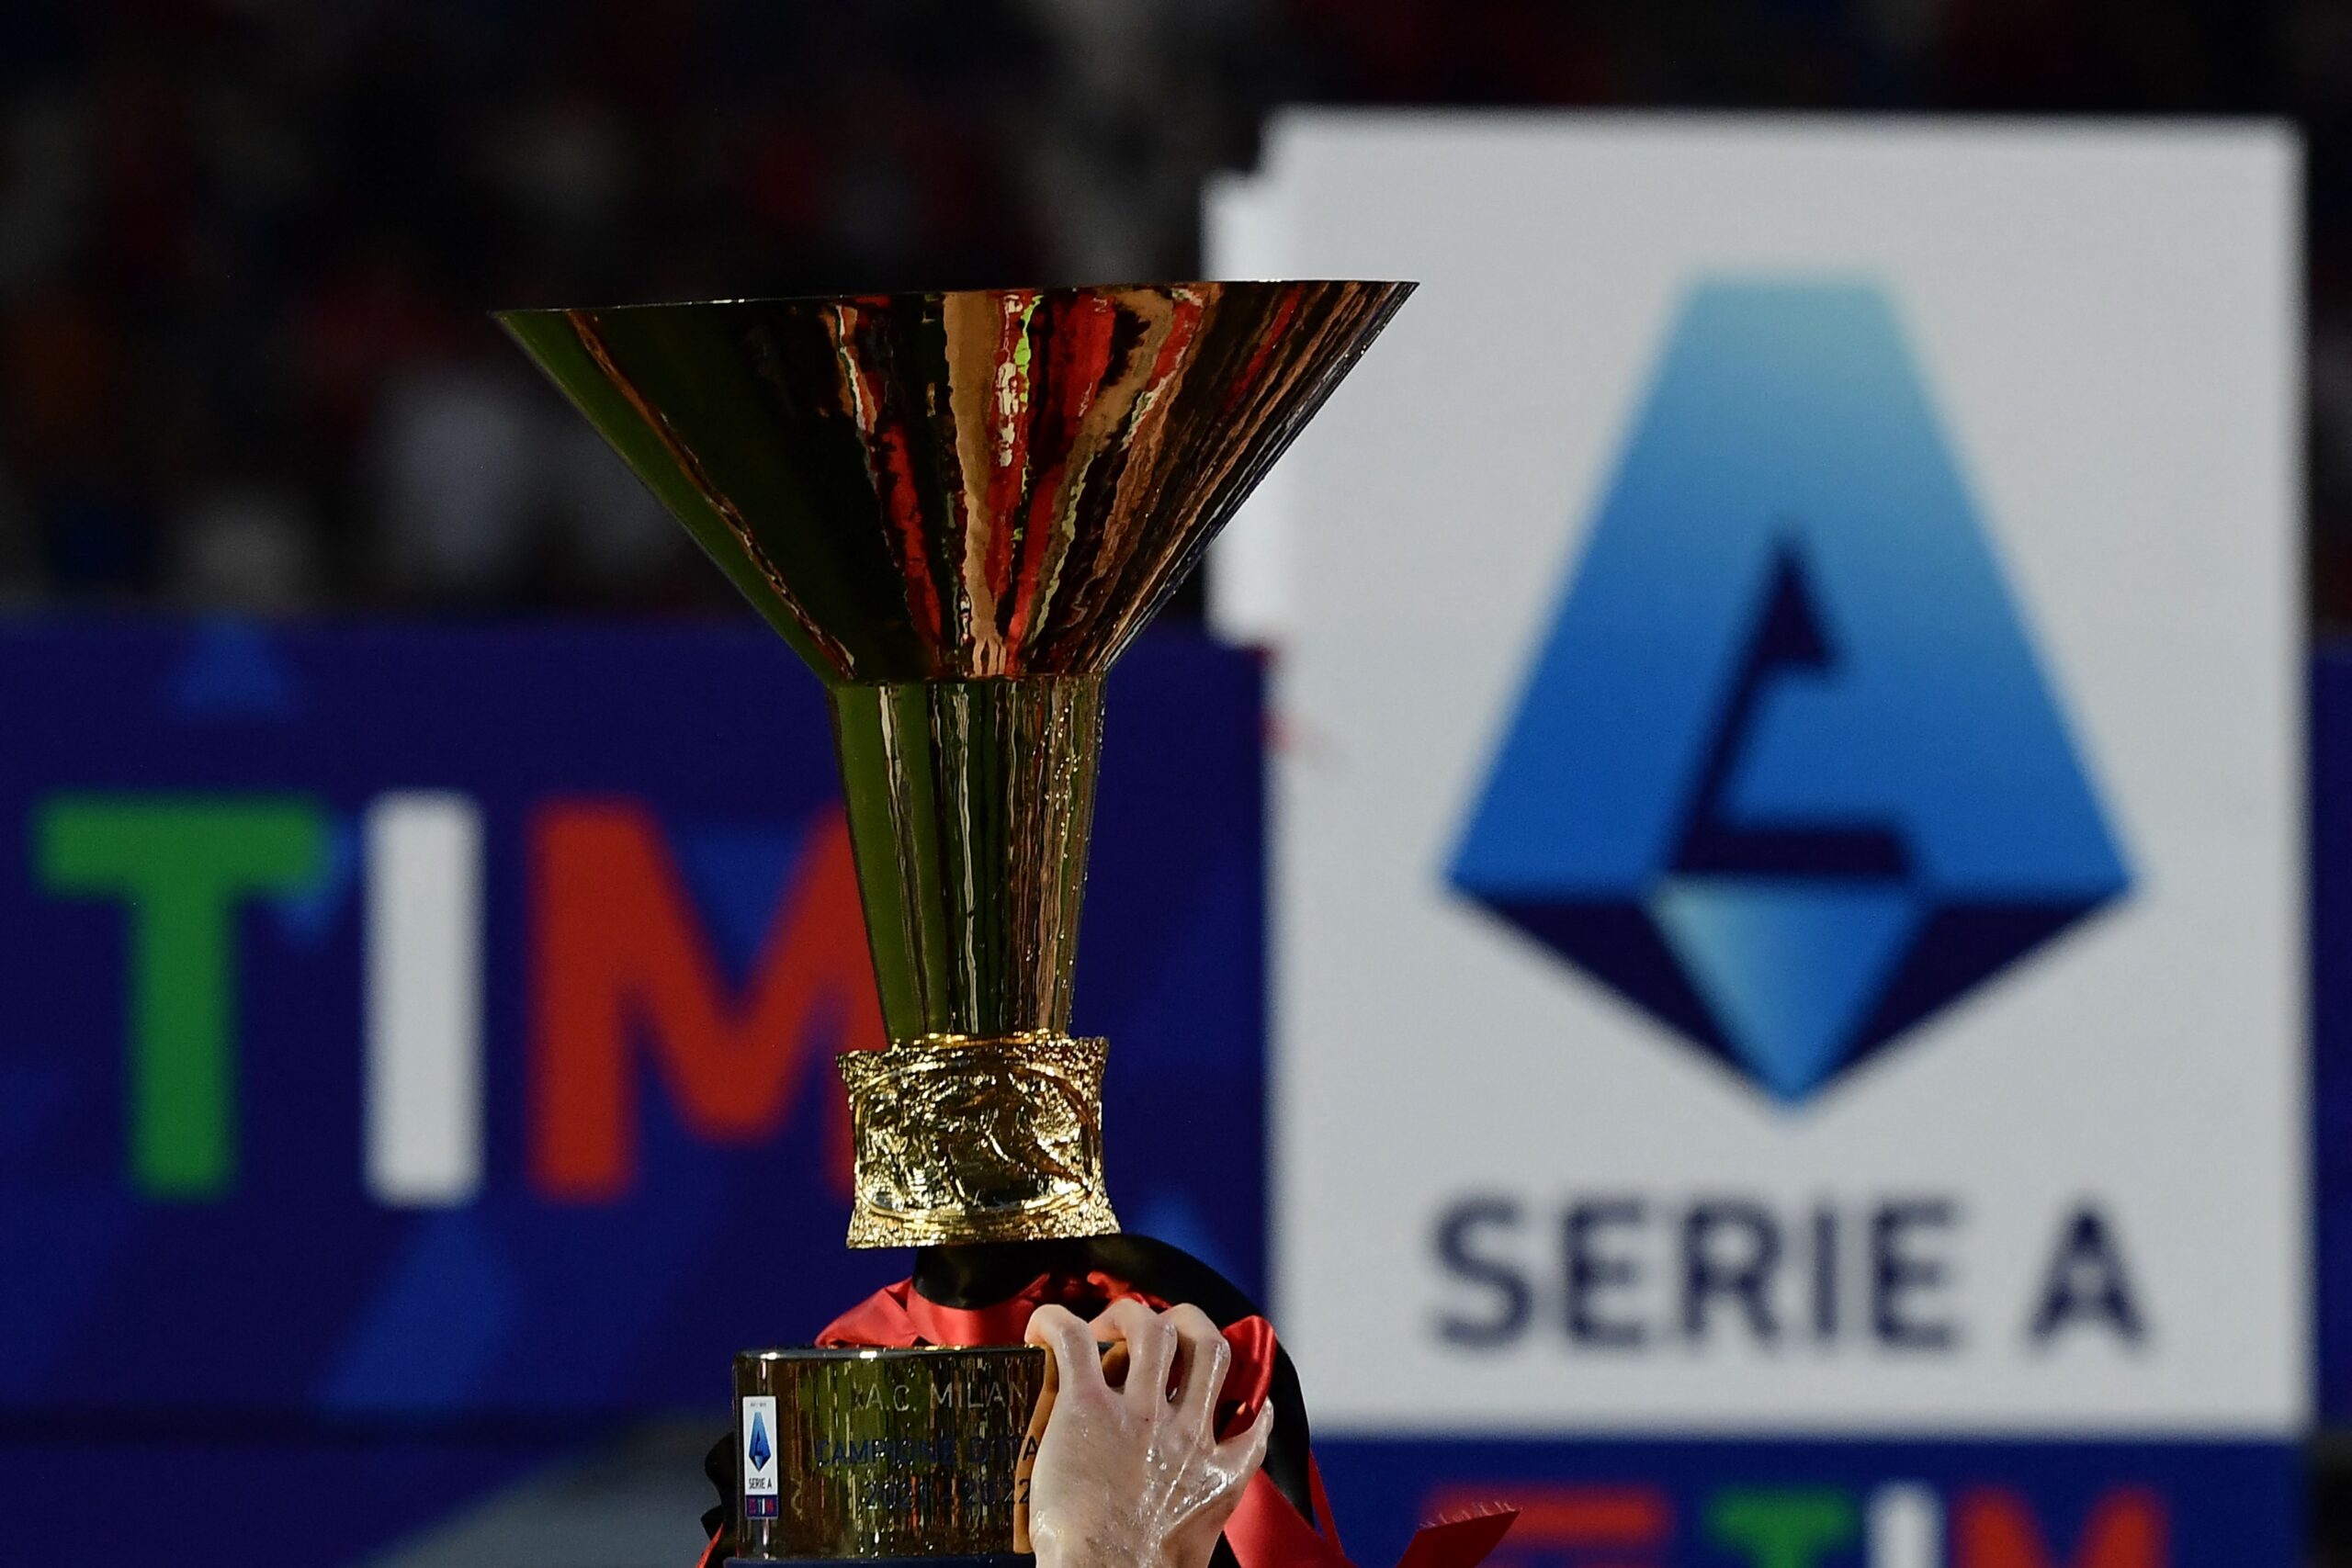 Times do campeonato italiano Serie B 2023-2024: veja lista completa